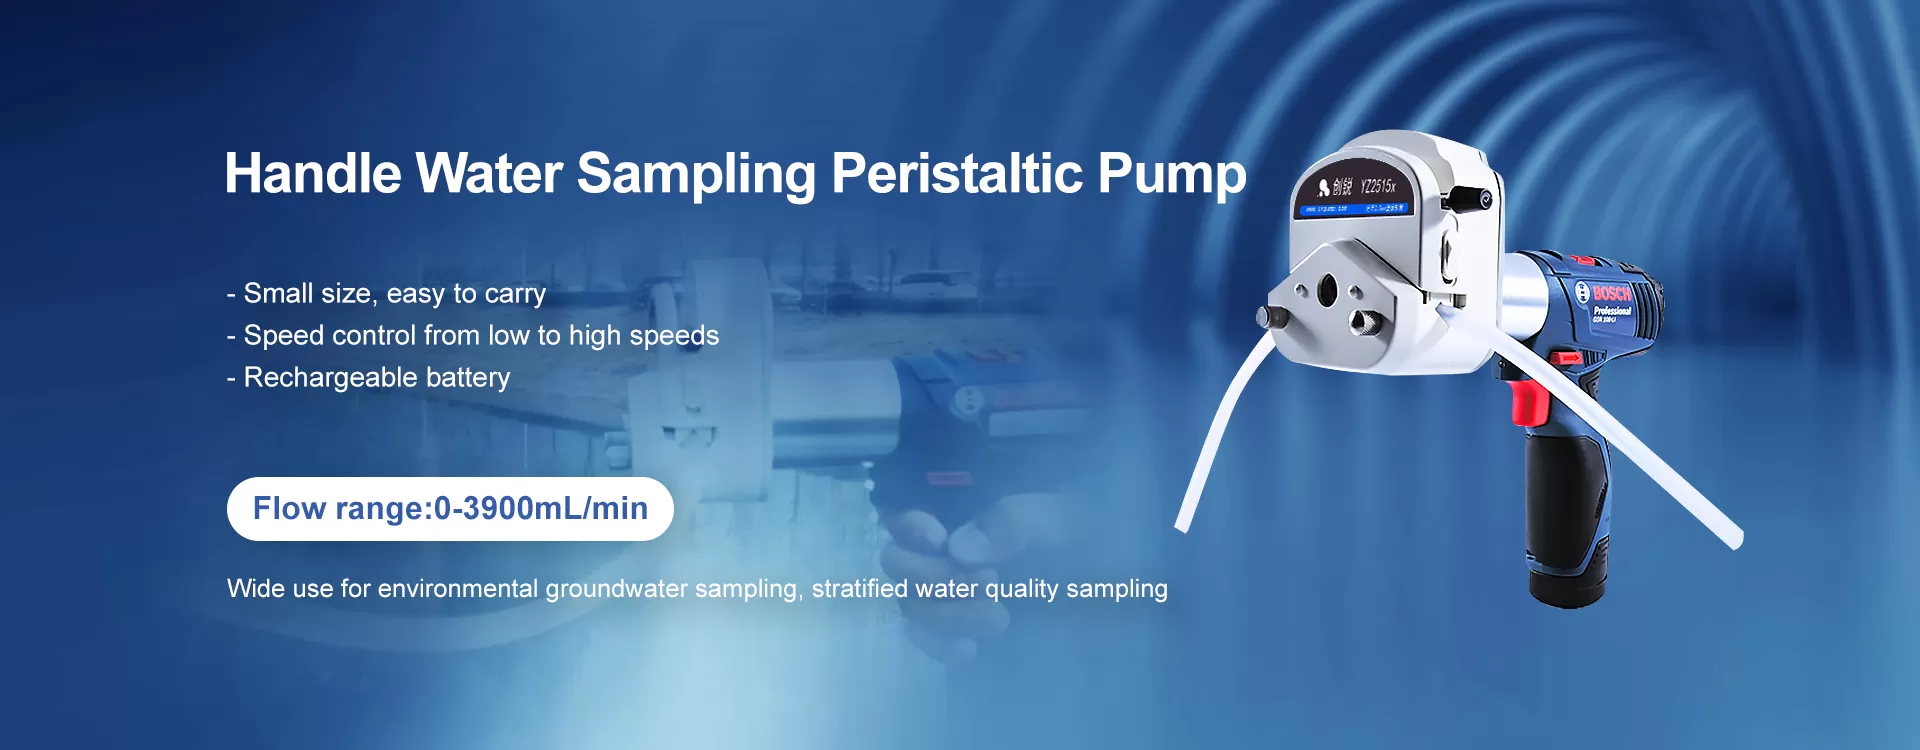 Handle Water Sampling Peristaltic Pump SC600